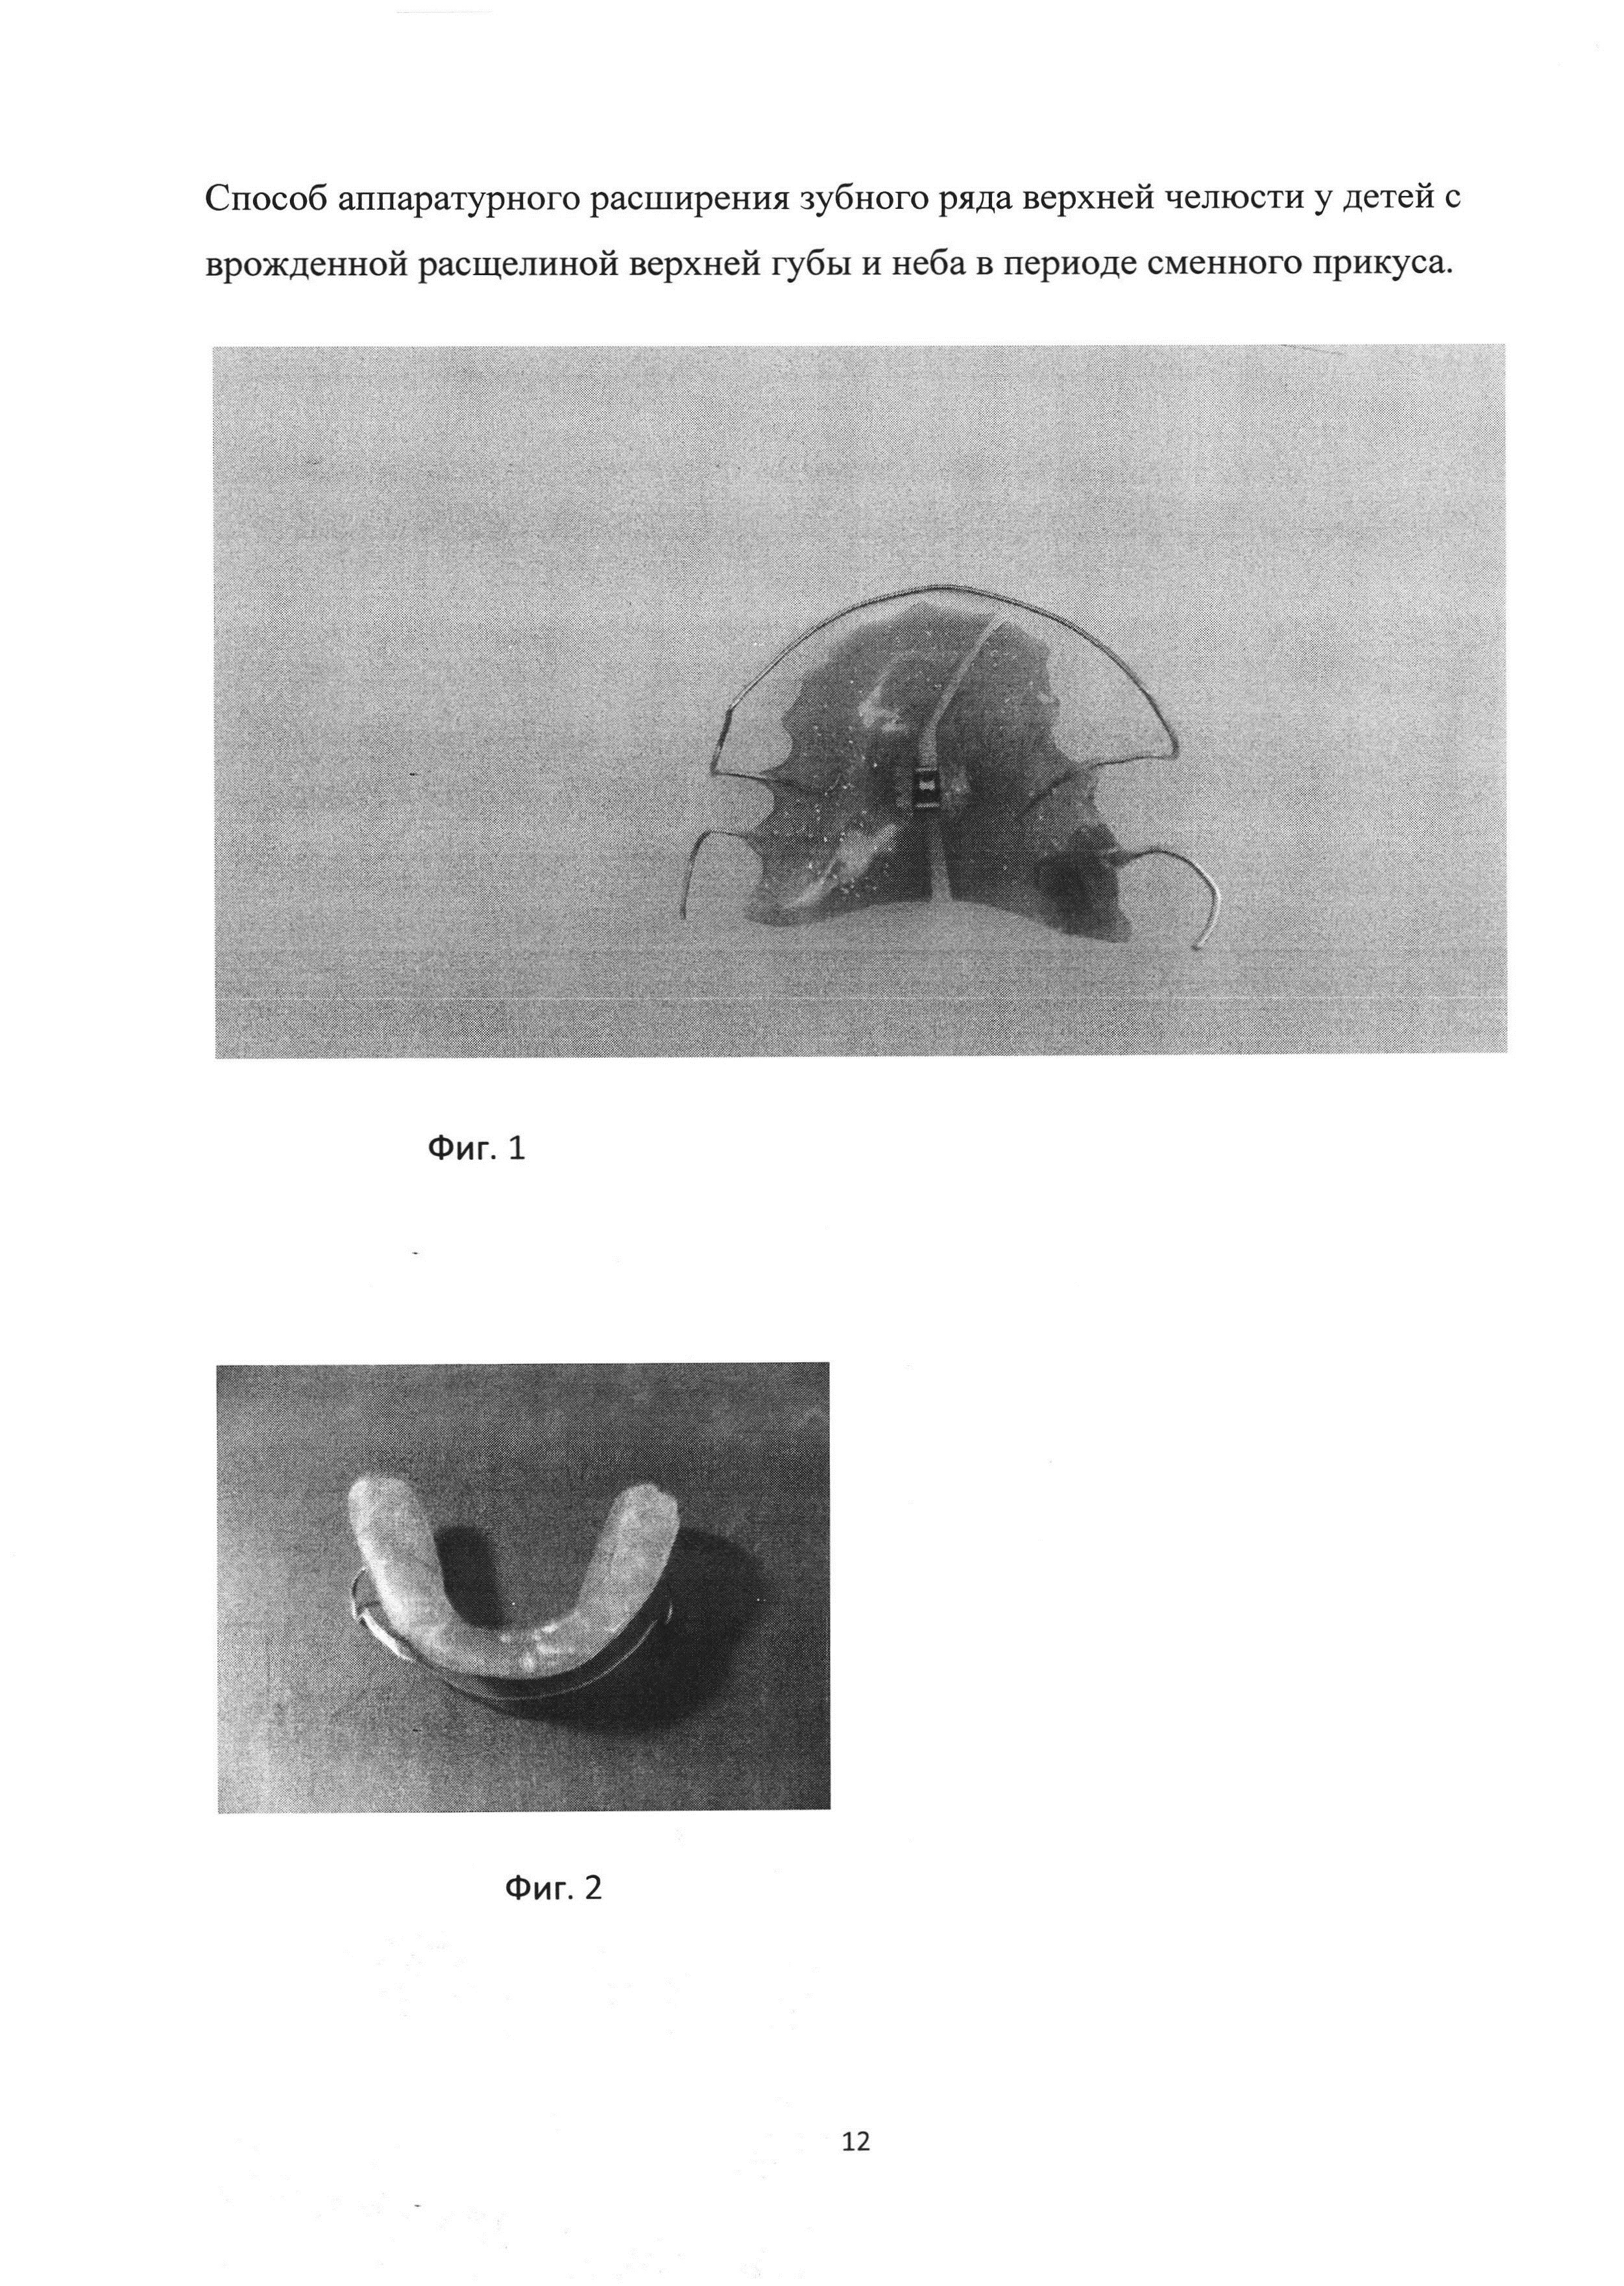 Способ аппаратурного расширения зубного ряда верхней челюсти у детей с врождённой расщелиной верхней губы и нёба в периоде сменного прикуса